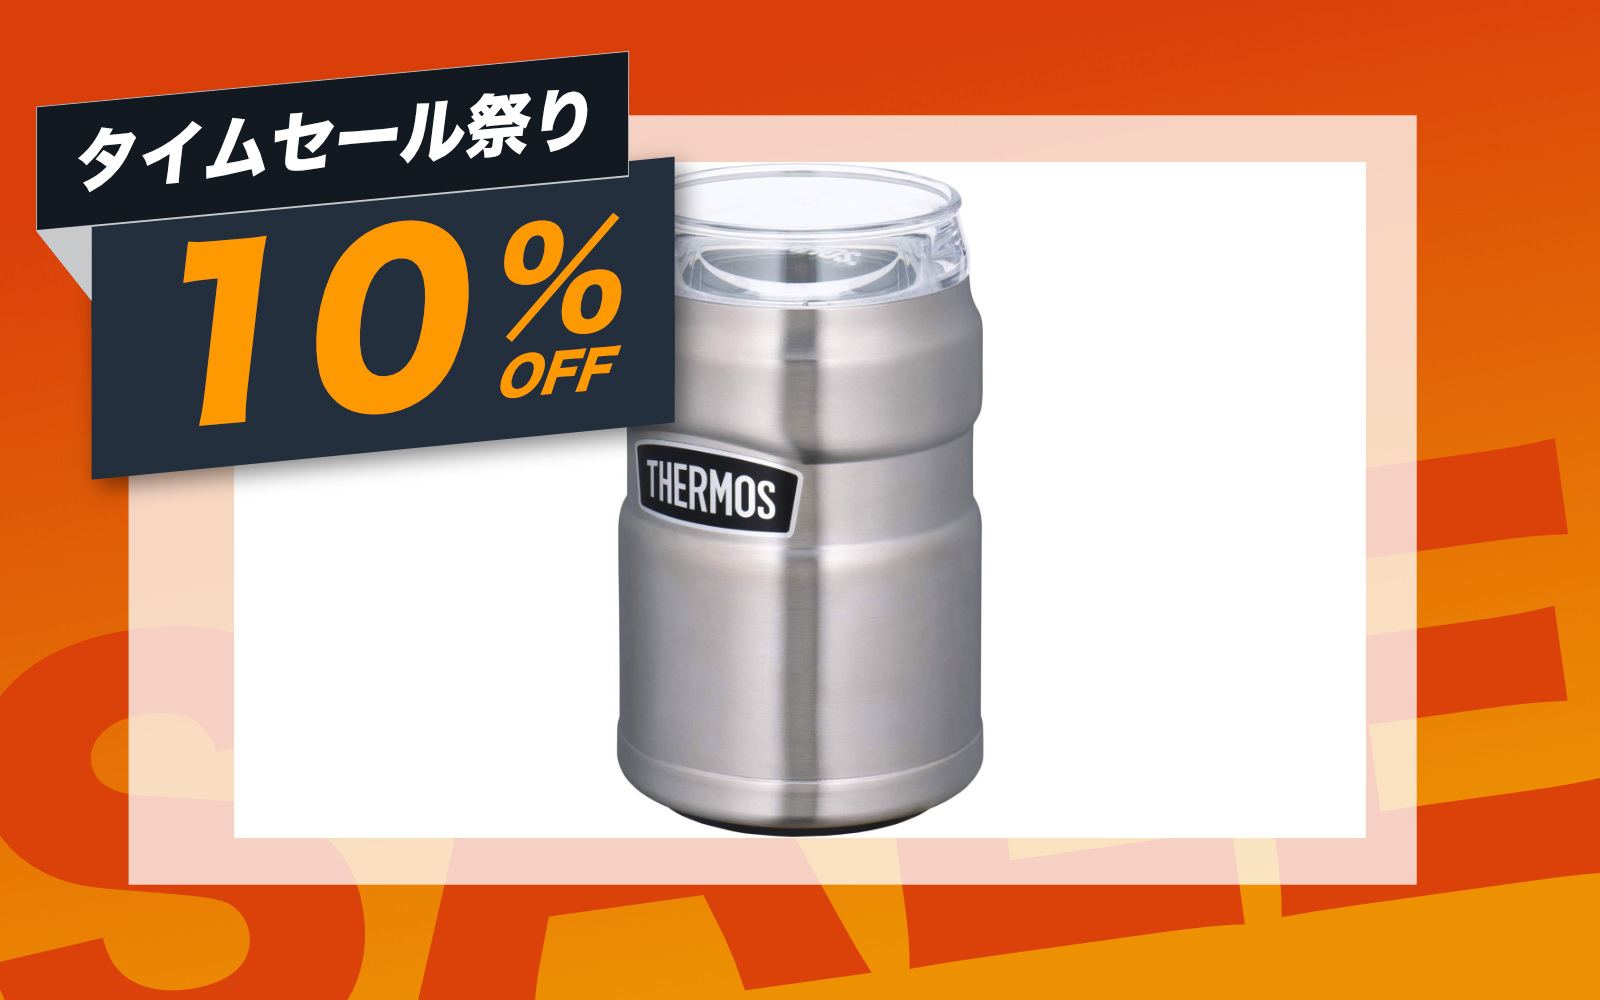 単体でタンブラーとしても使える保冷缶ホルダー、ほぼ過去最安値 | ゴリミー